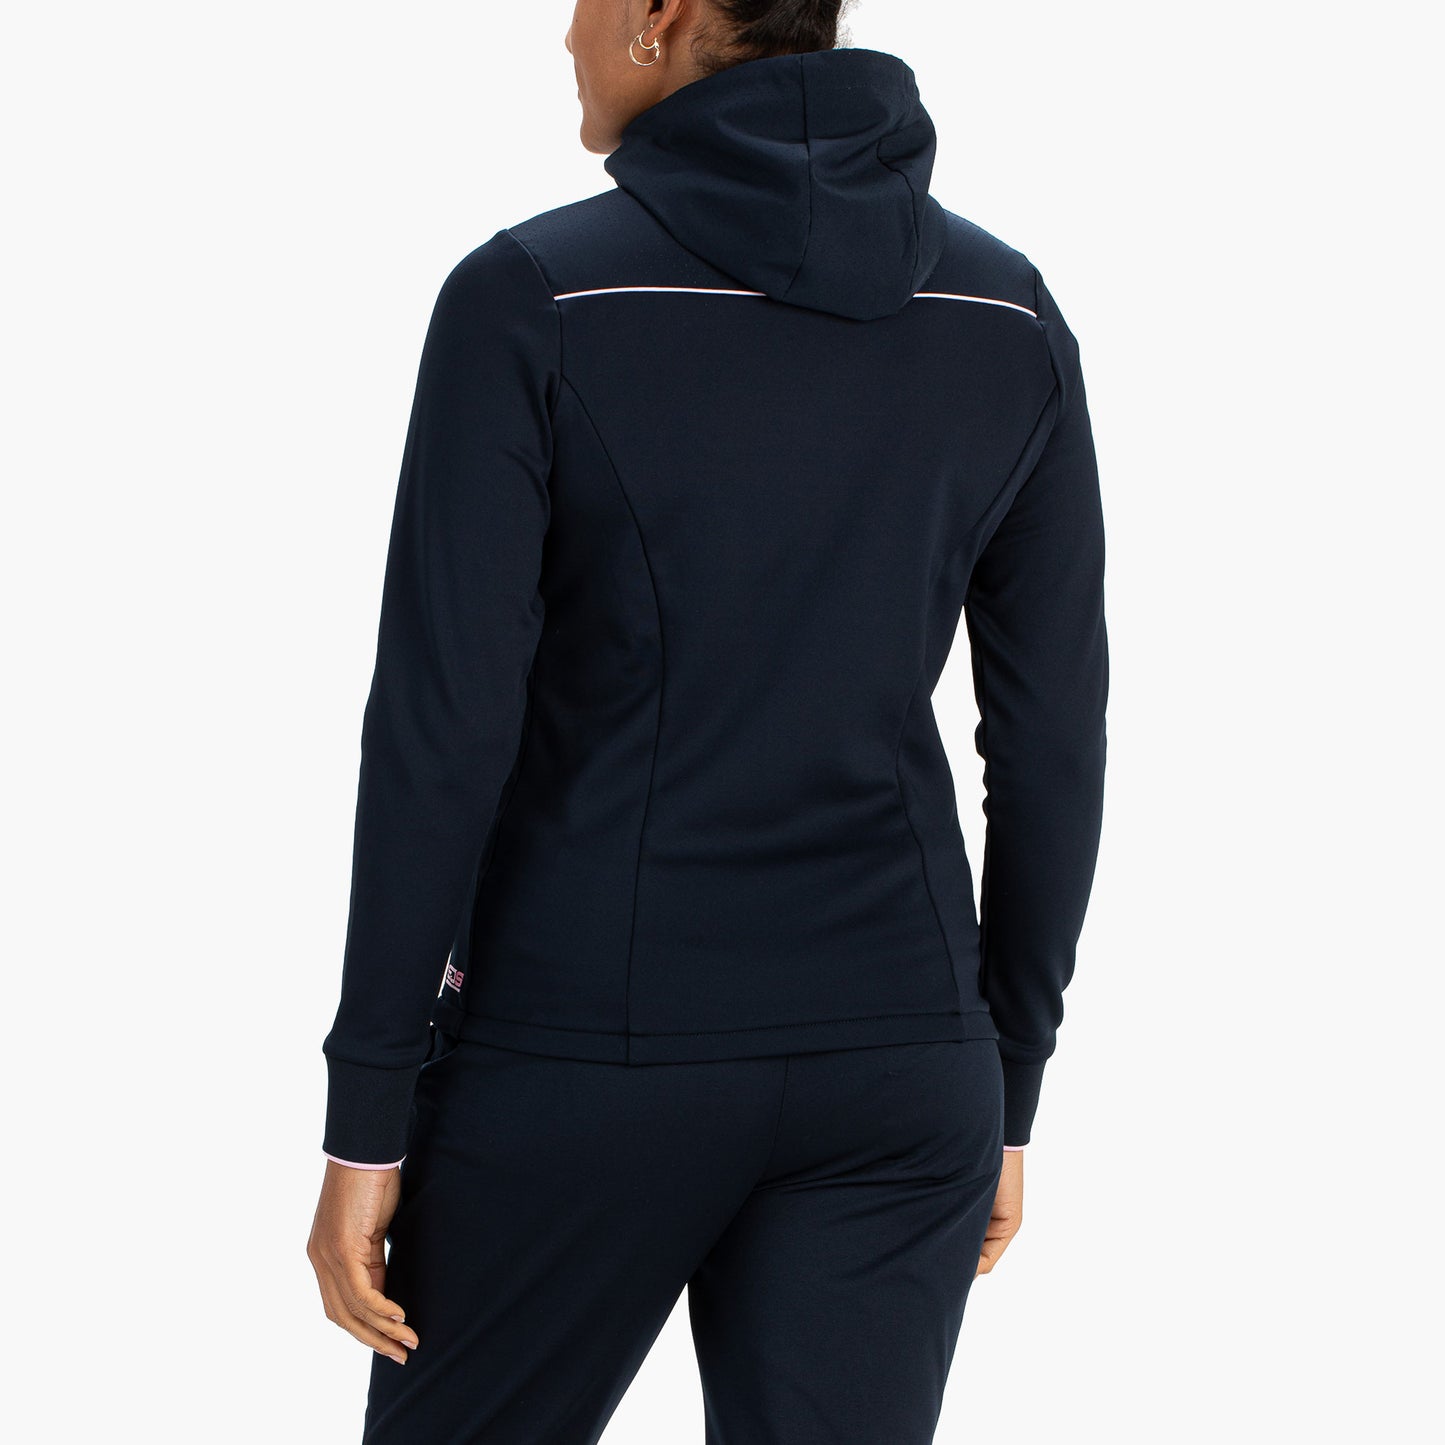 Sjeng Sports Fara Women's Hooded Tennis Jacket Dark Blue (2)